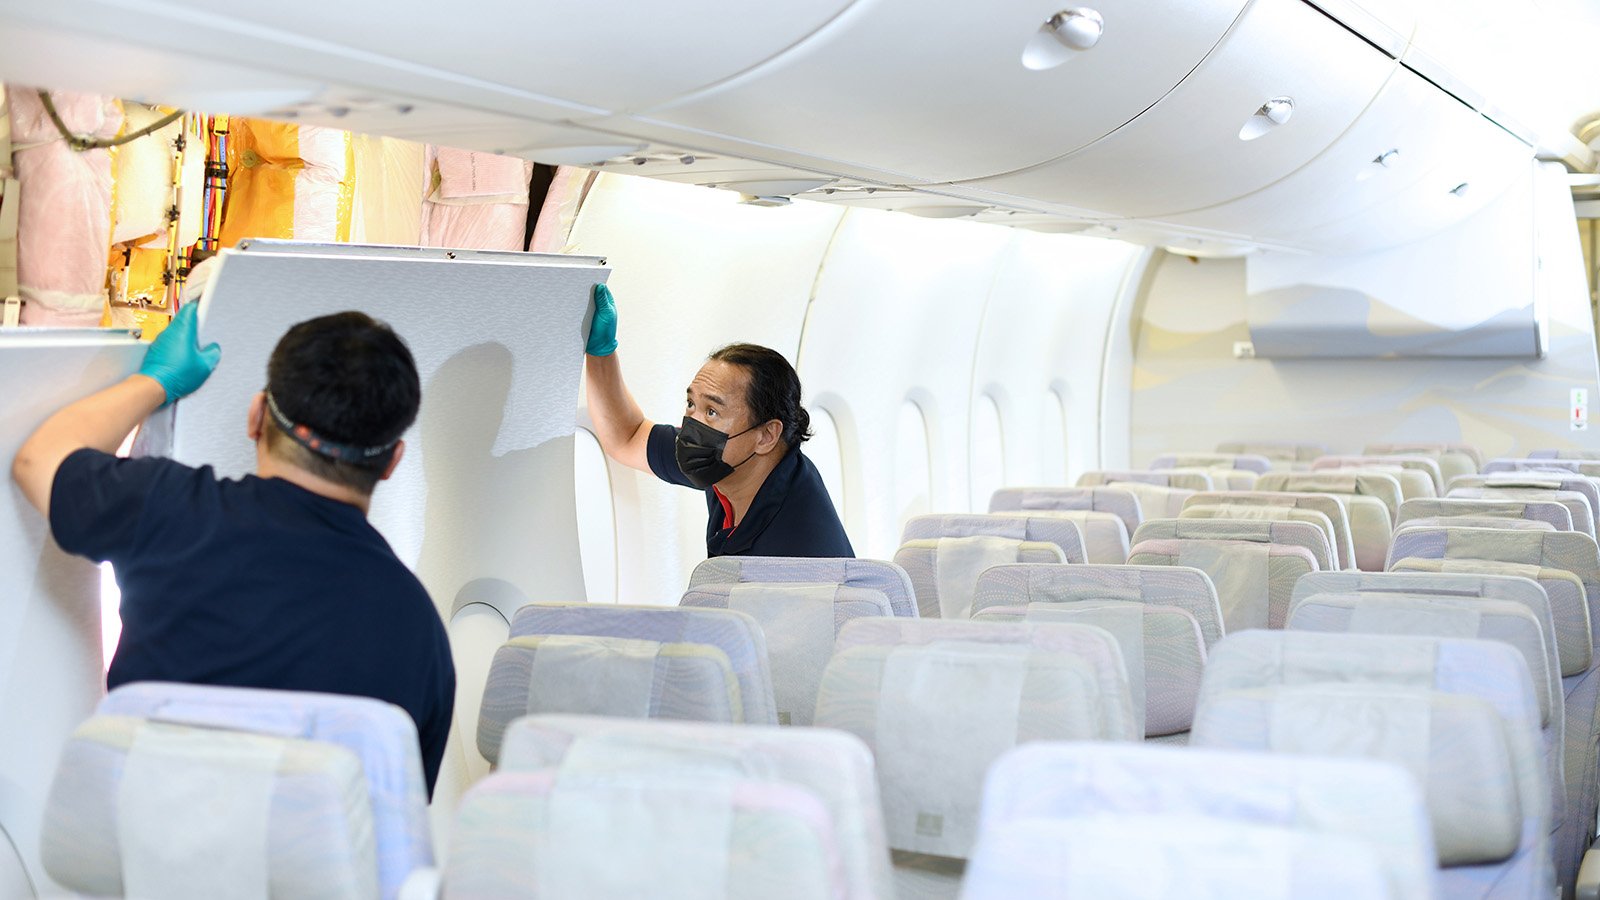 Emirates cabin retrofit trials